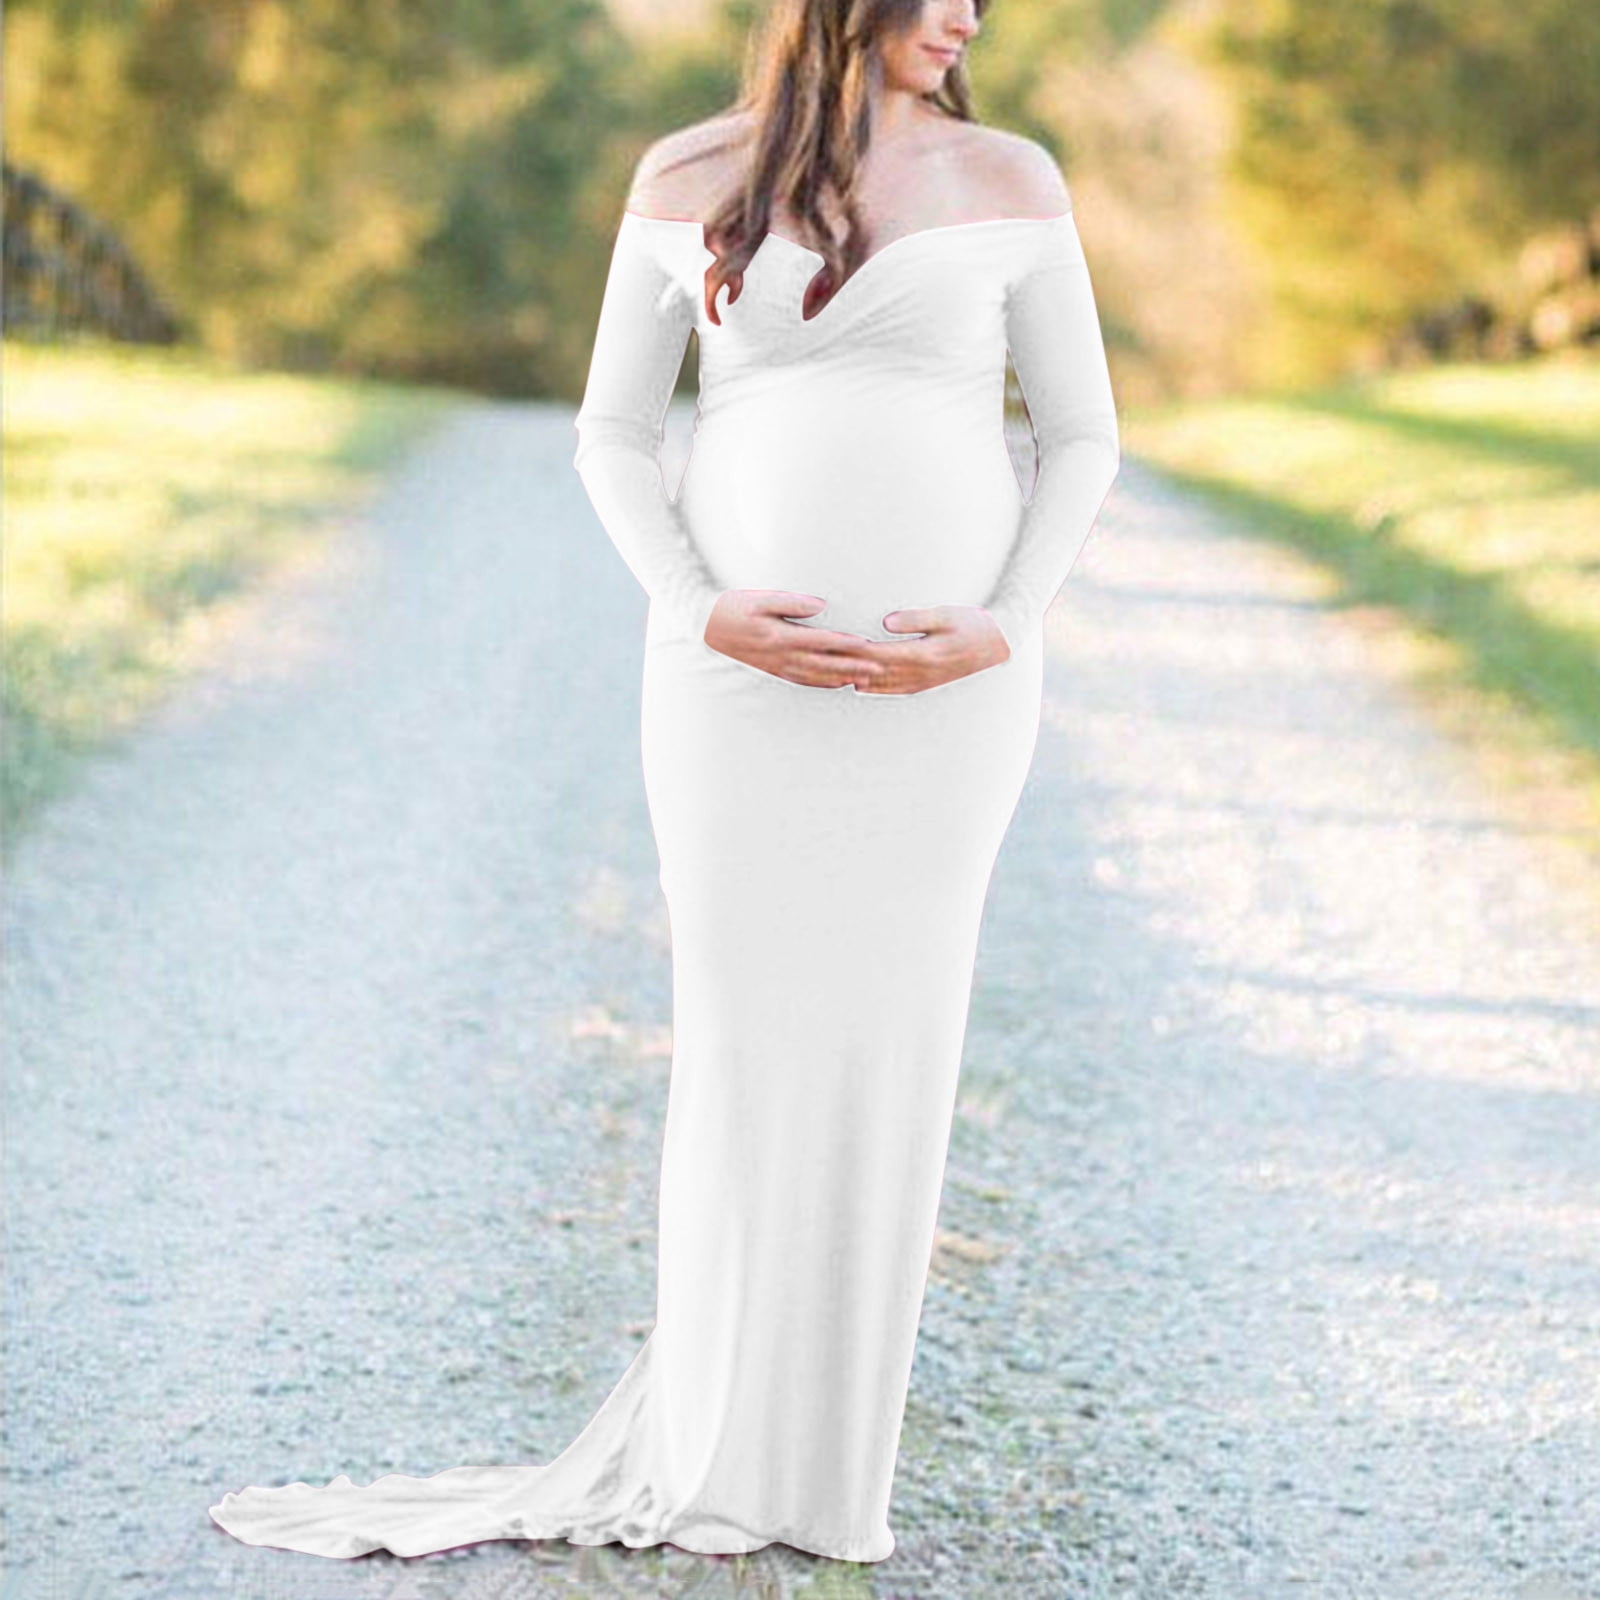 White Lace Maternity Robe for Photoshoot, Bump Friendly Dresses for  Photoshoot, Lace Photoshoot Dress,plus Size Maternity Dresses,babyshower -  Etsy